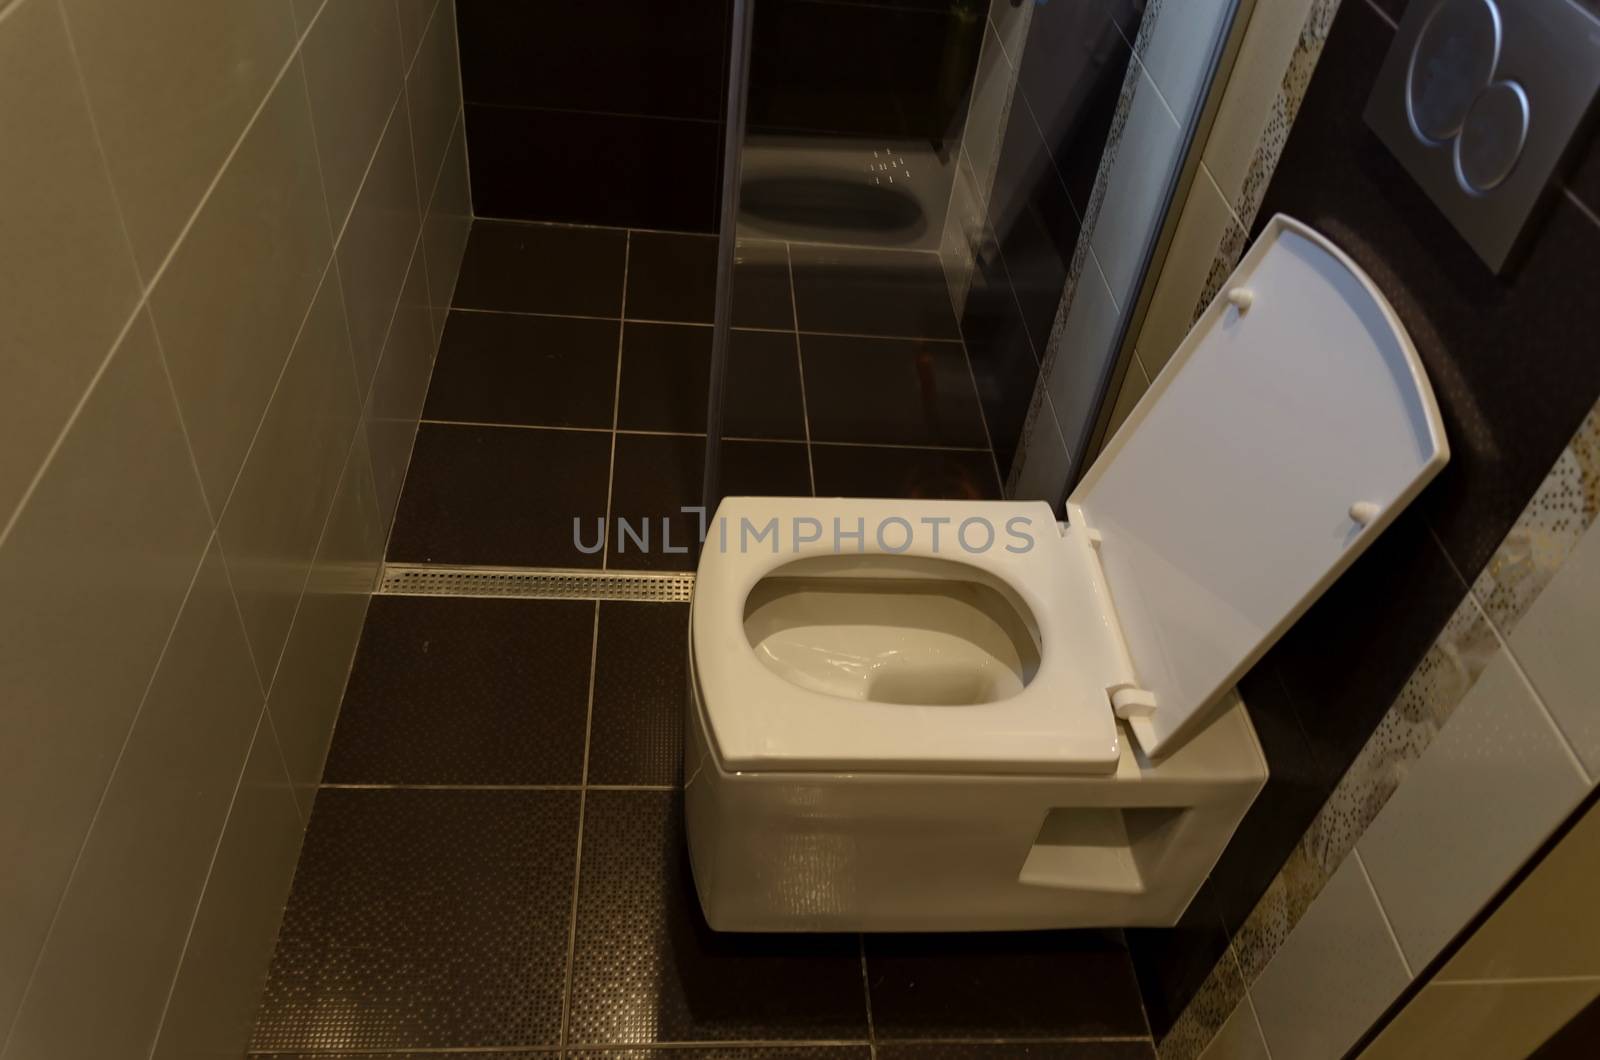 Modern interior toilet with white ceramic toilet bowl in a renovated home, Sofia, Bulgaria